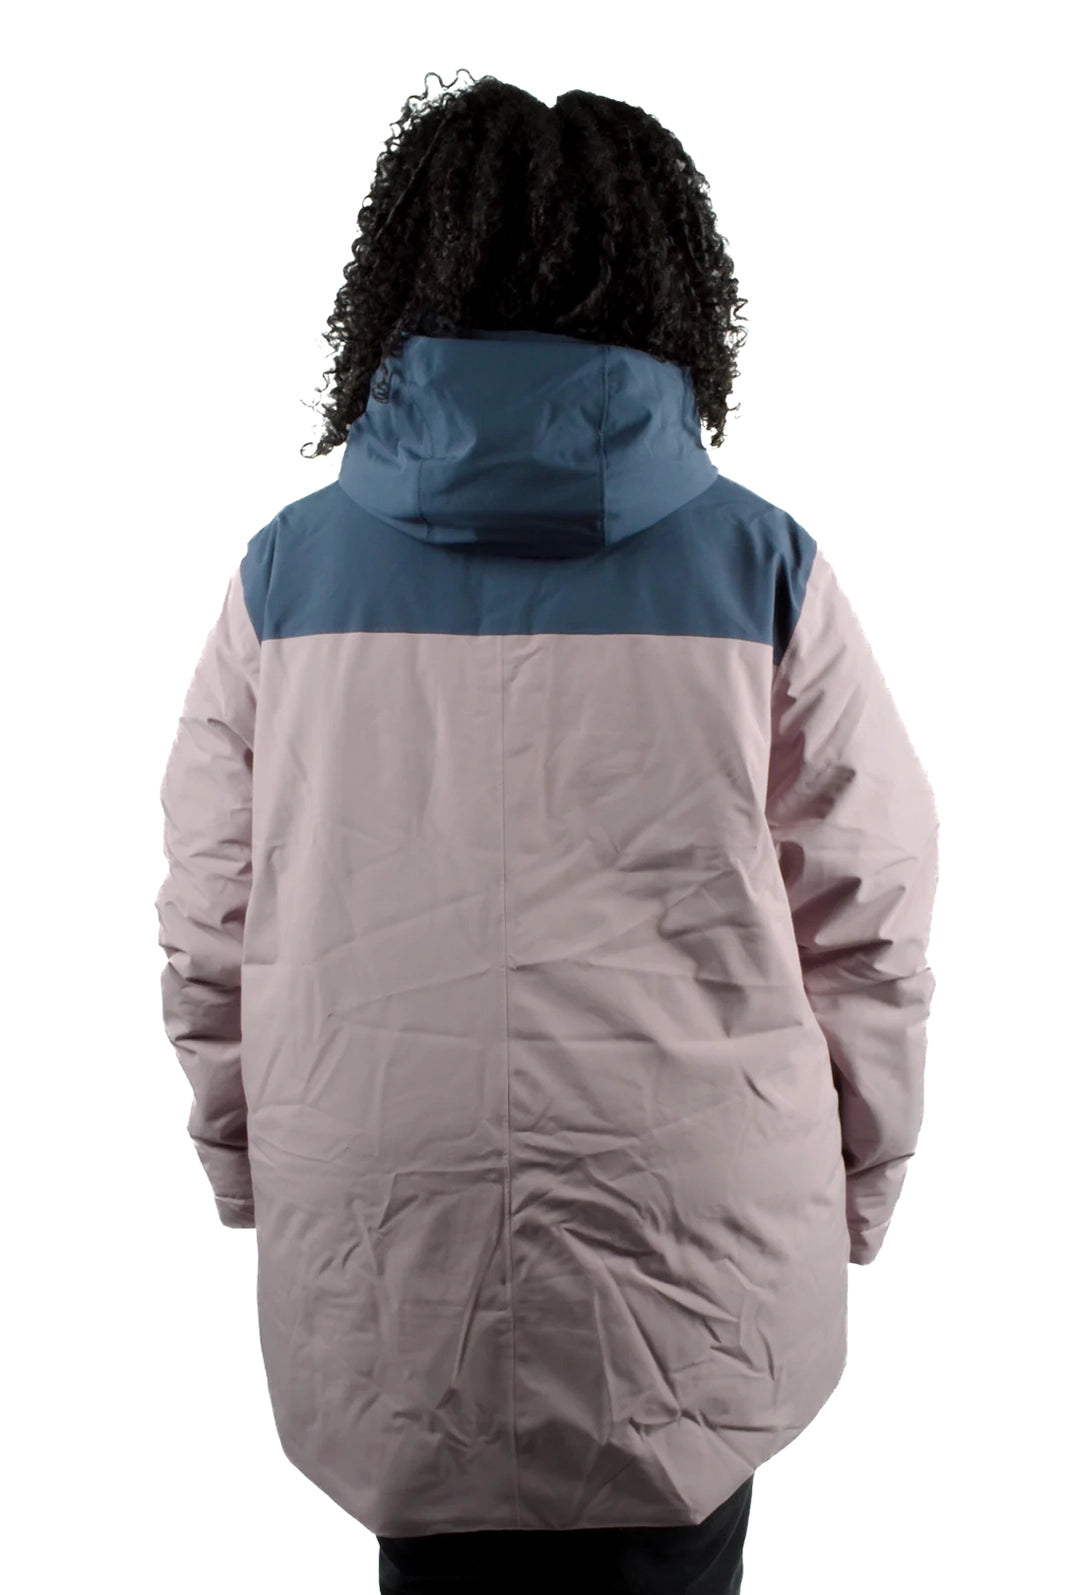 Manteau isolé Snowcrew Taille Plus d'Outdoor Research